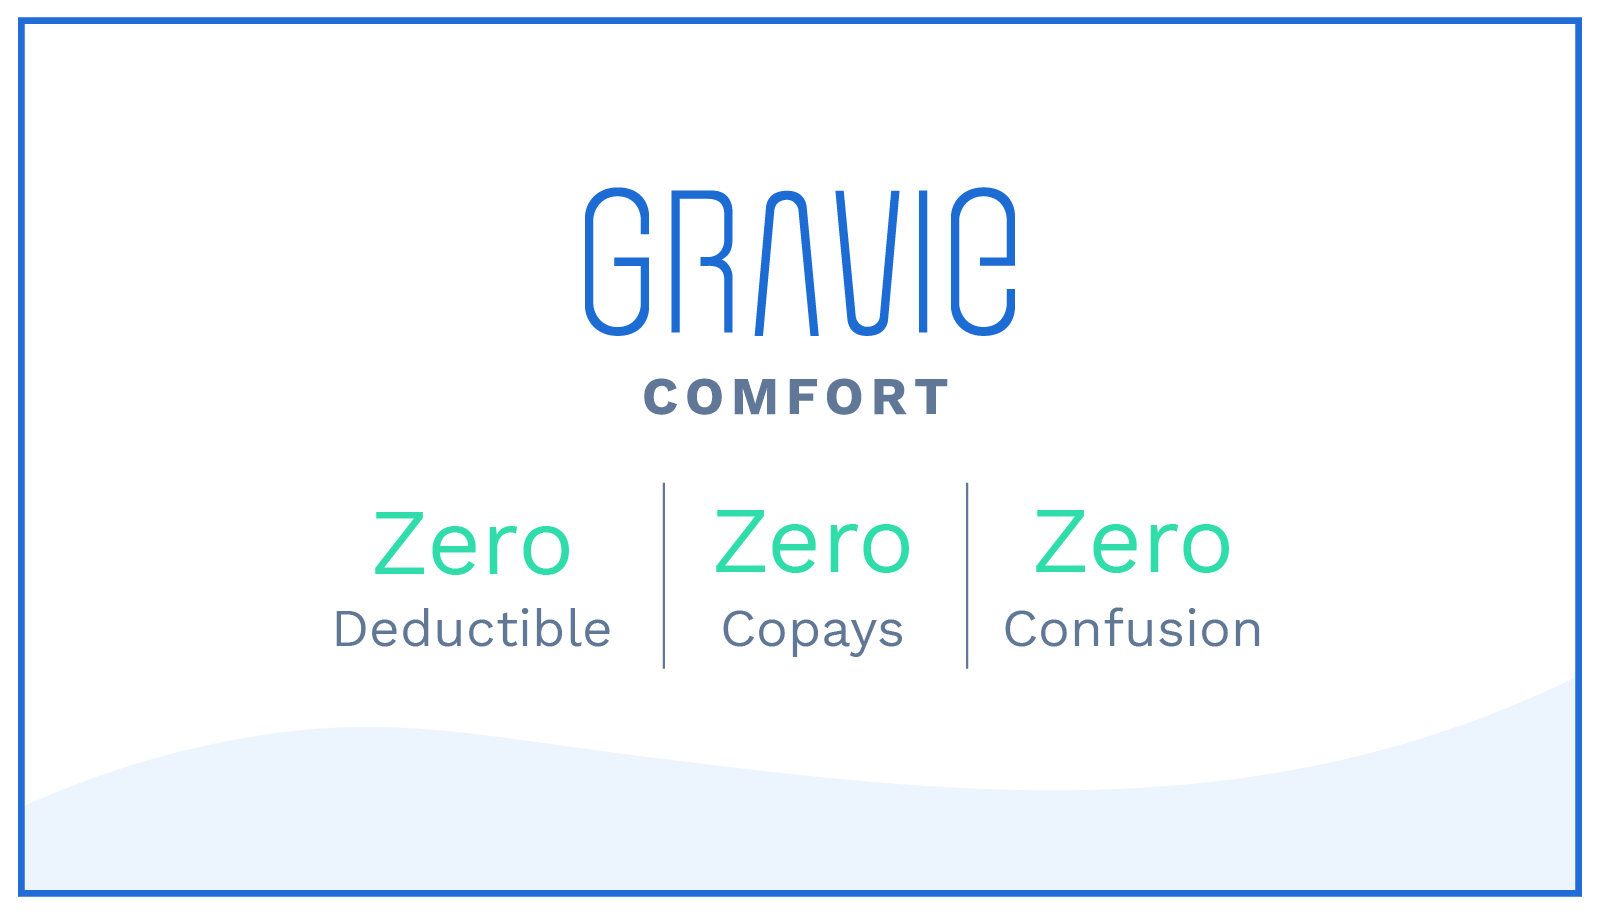 Gravie Comfort Press Release